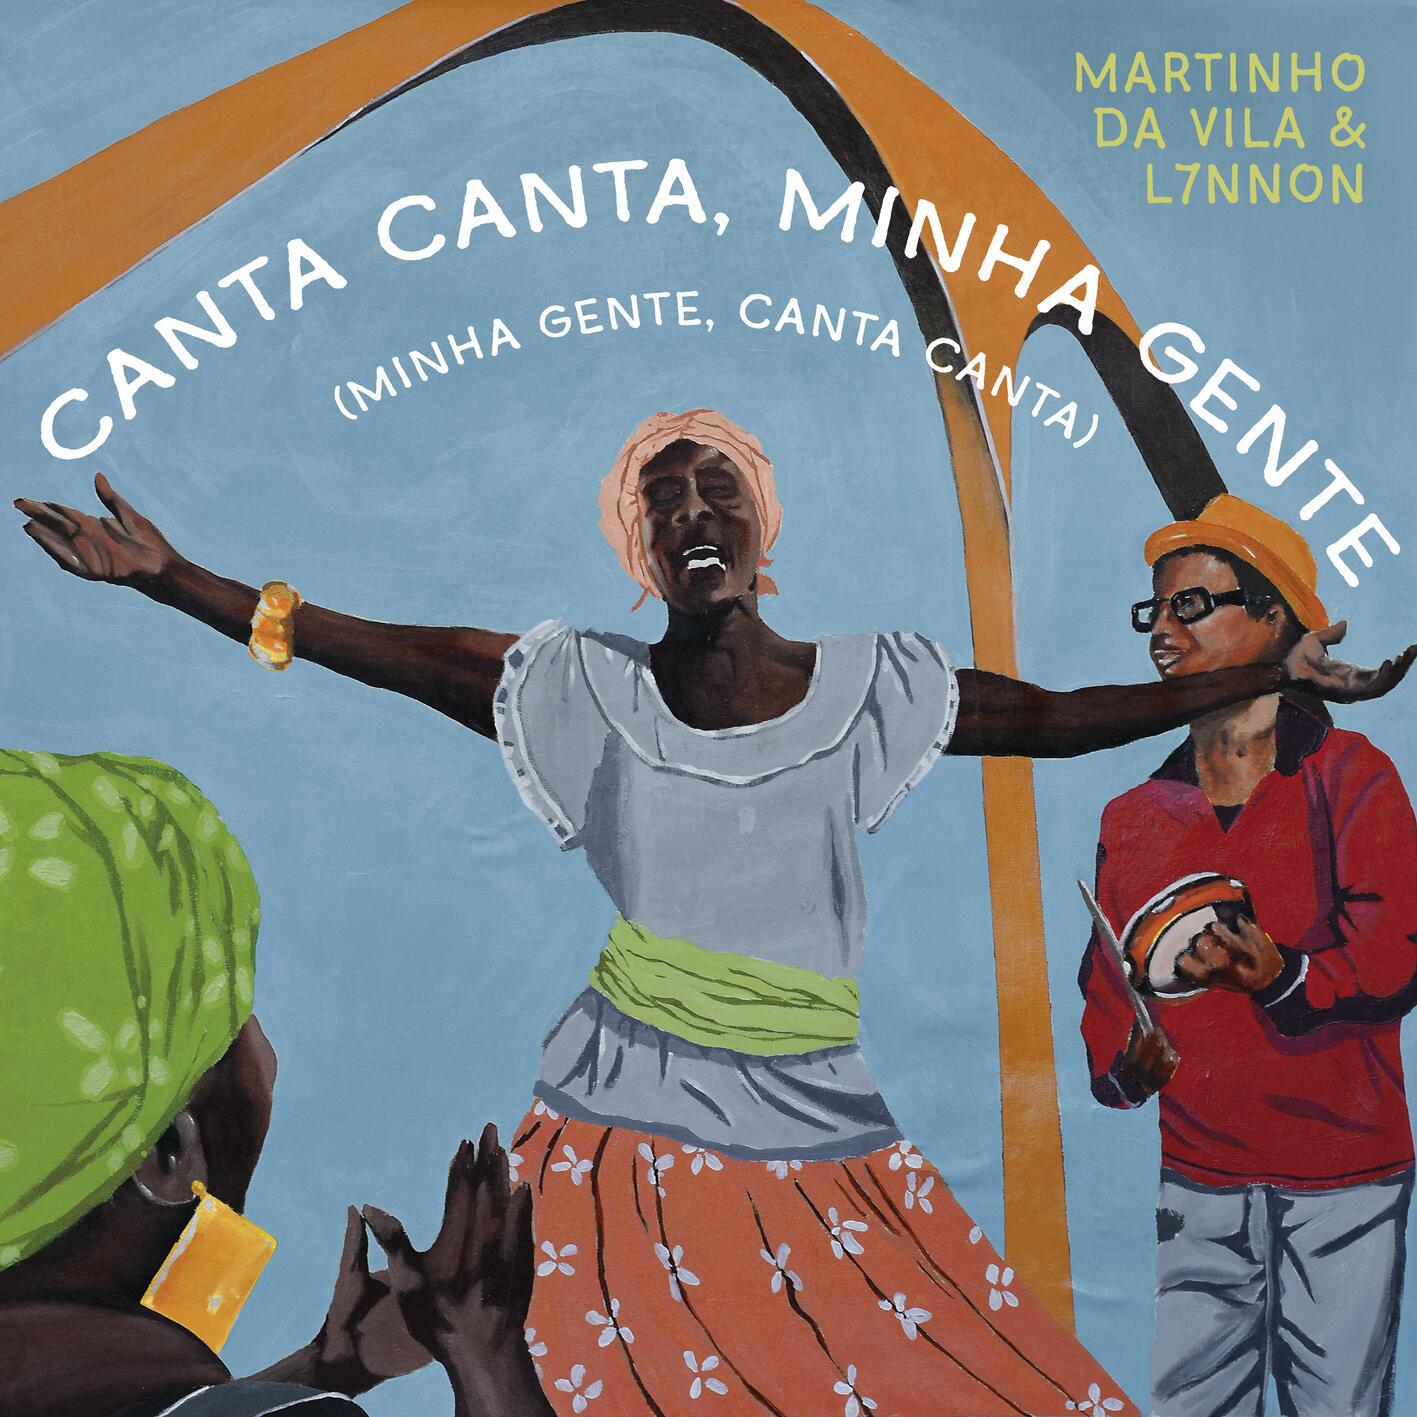 Martinho da Vila - Canta Canta, Minha Gente (Minha Gente, Canta Canta)